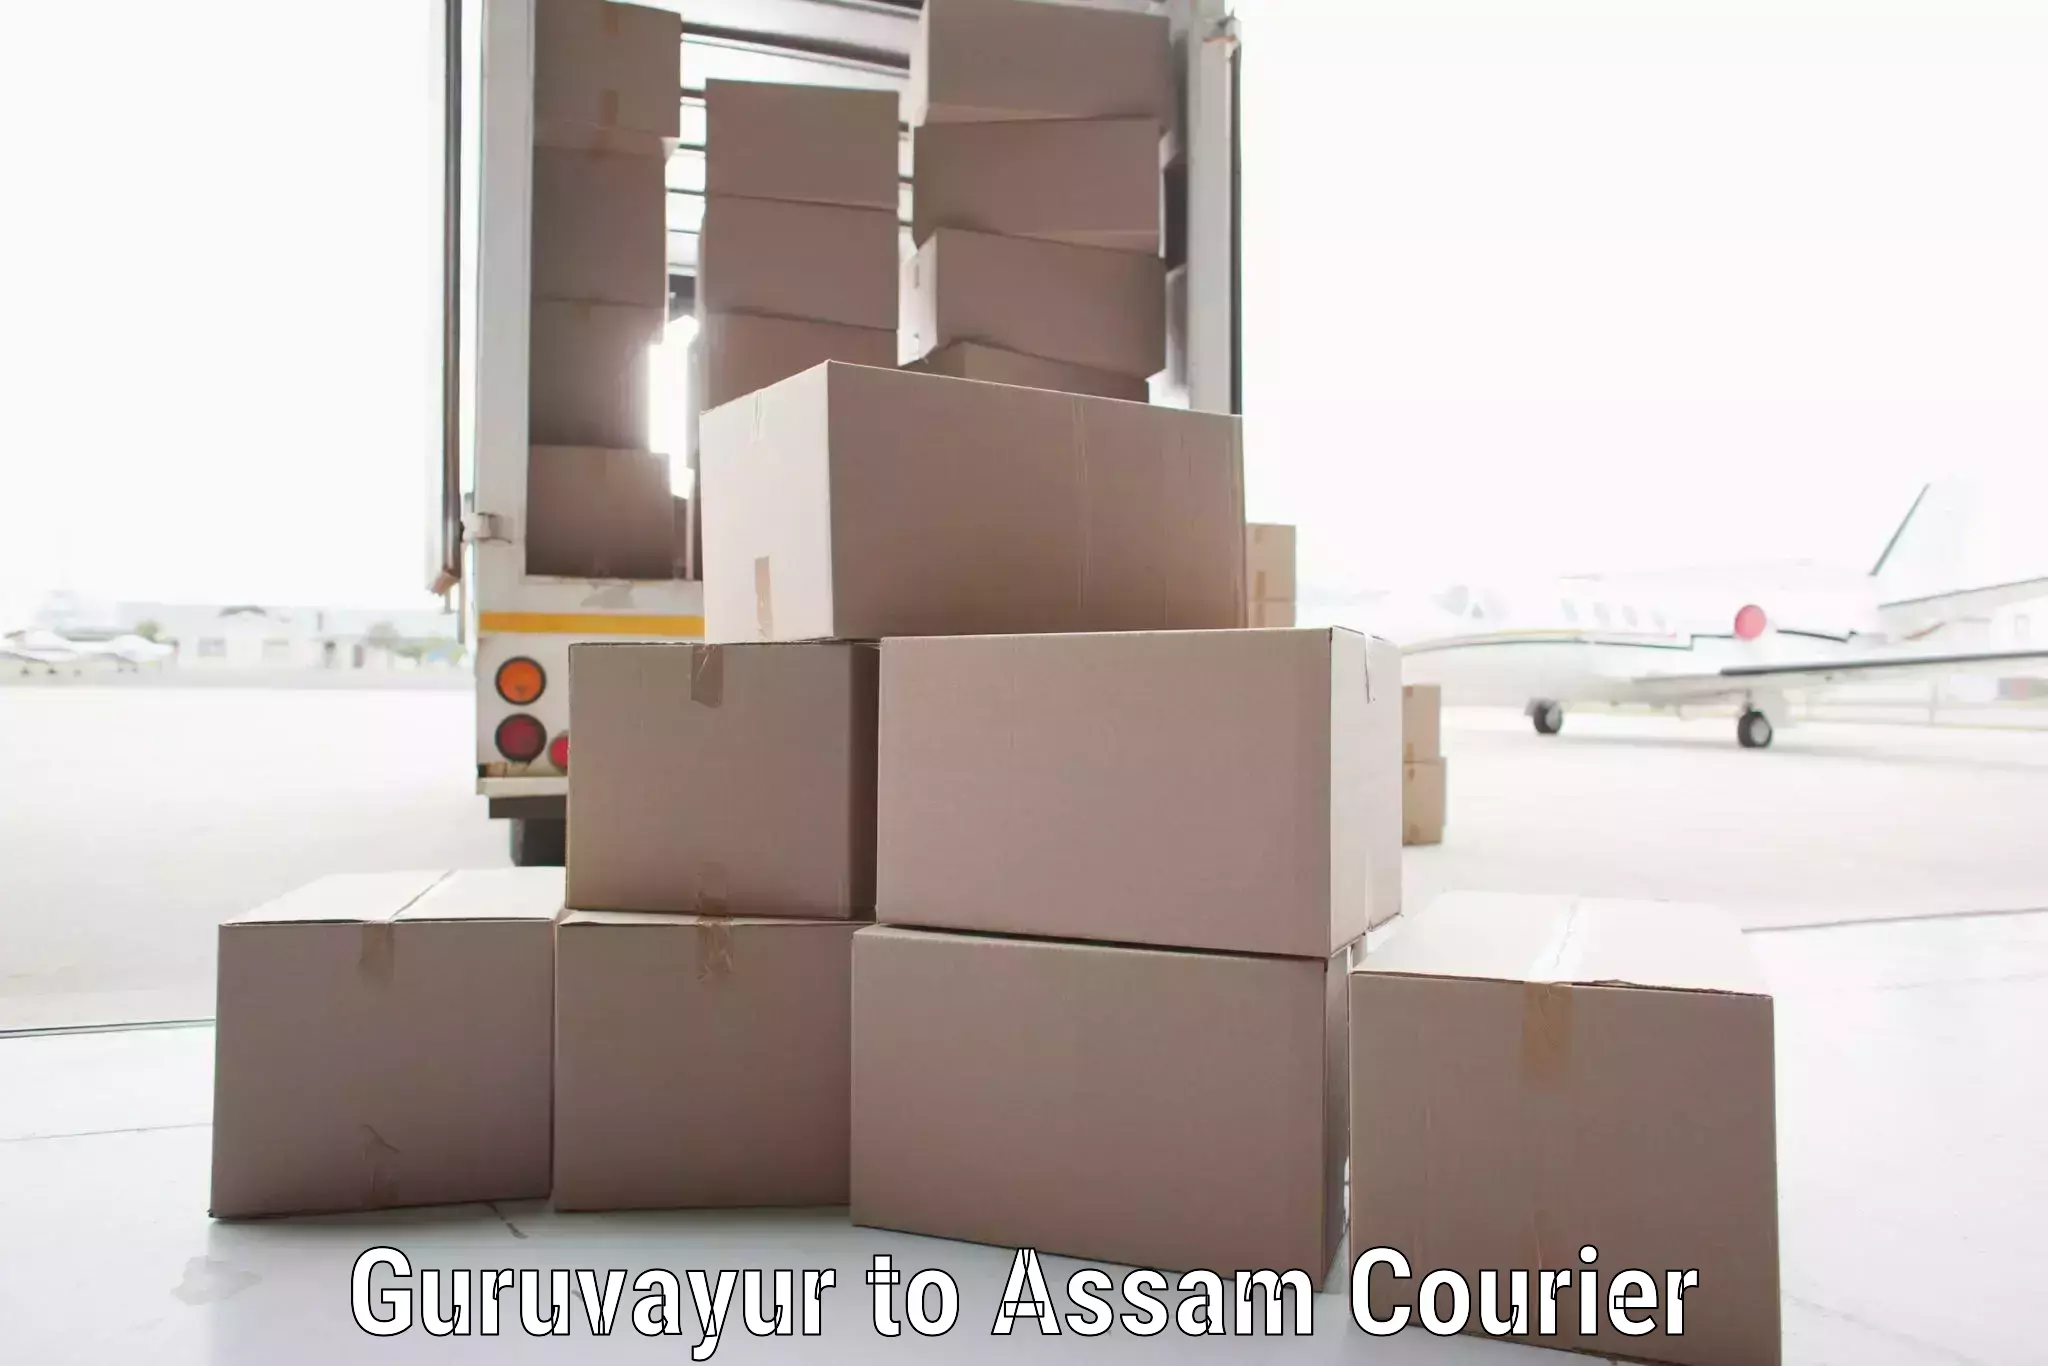 Seamless shipping experience Guruvayur to Kampur